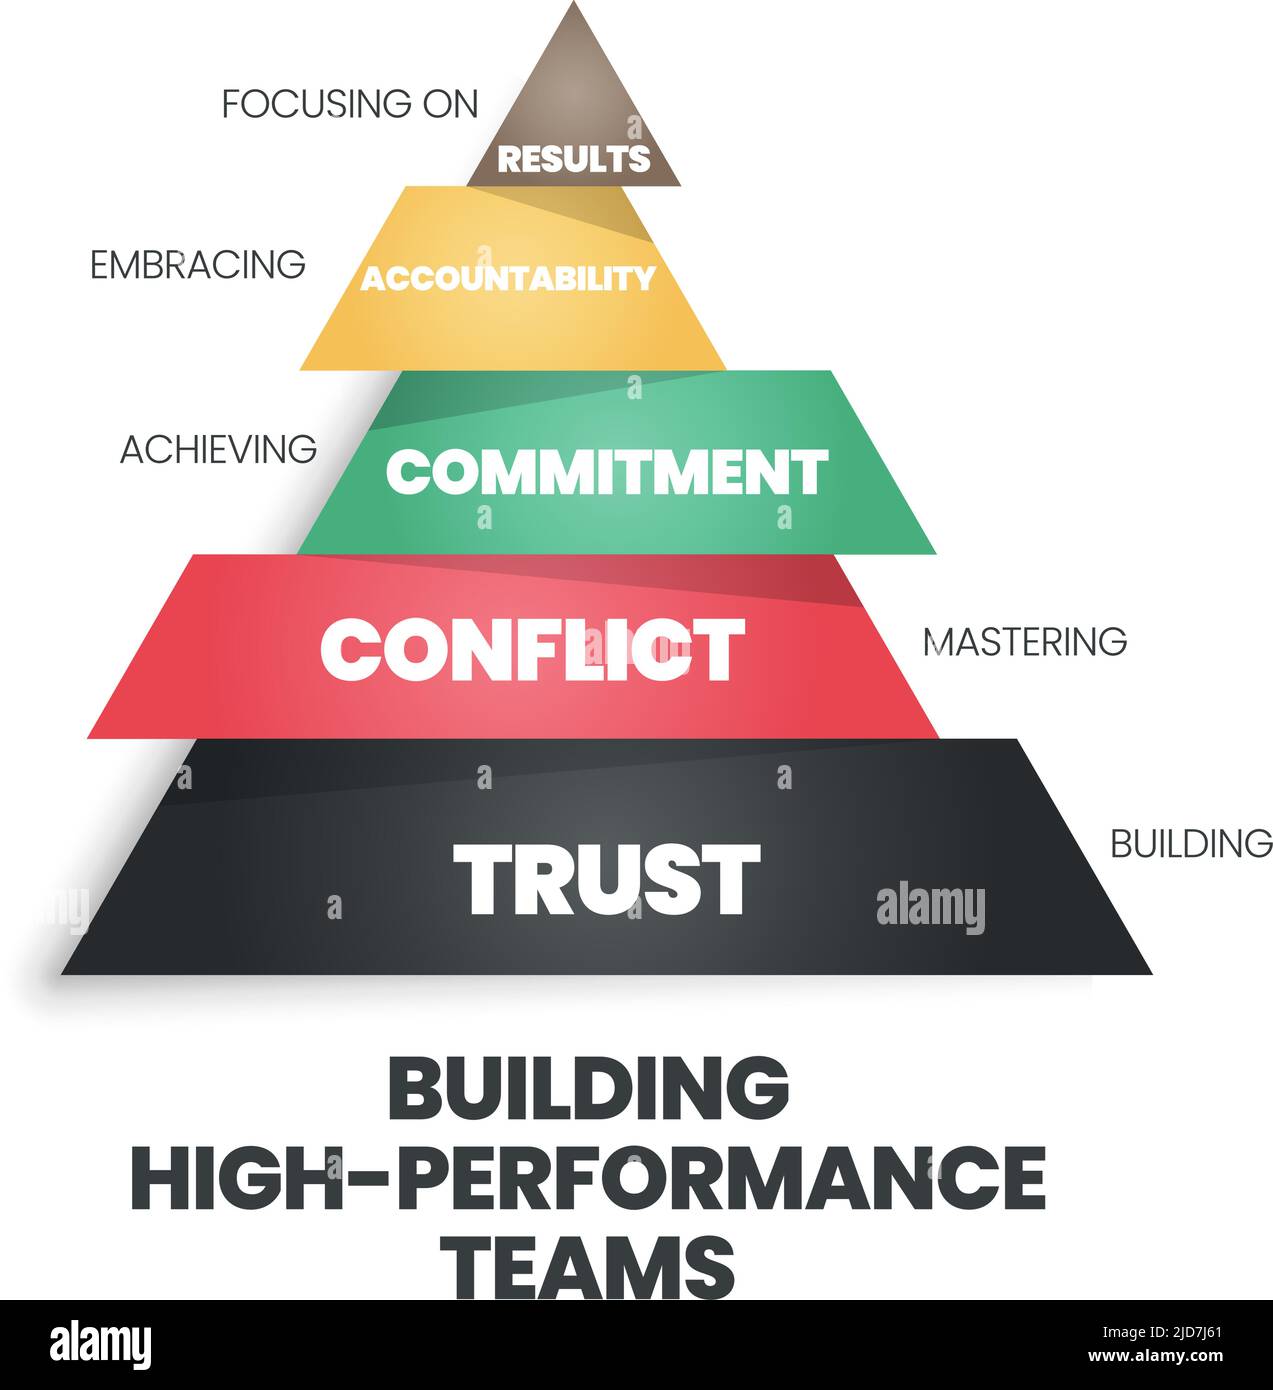 Eine Pyramide des Aufbaus eines Hochleistungskonzepts für Teams hat Vertrauen, Konflikte, Engagement, Verantwortlichkeit und Ergebnisse. Die Vektor-Infografik ist eine menschliche r Stock Vektor